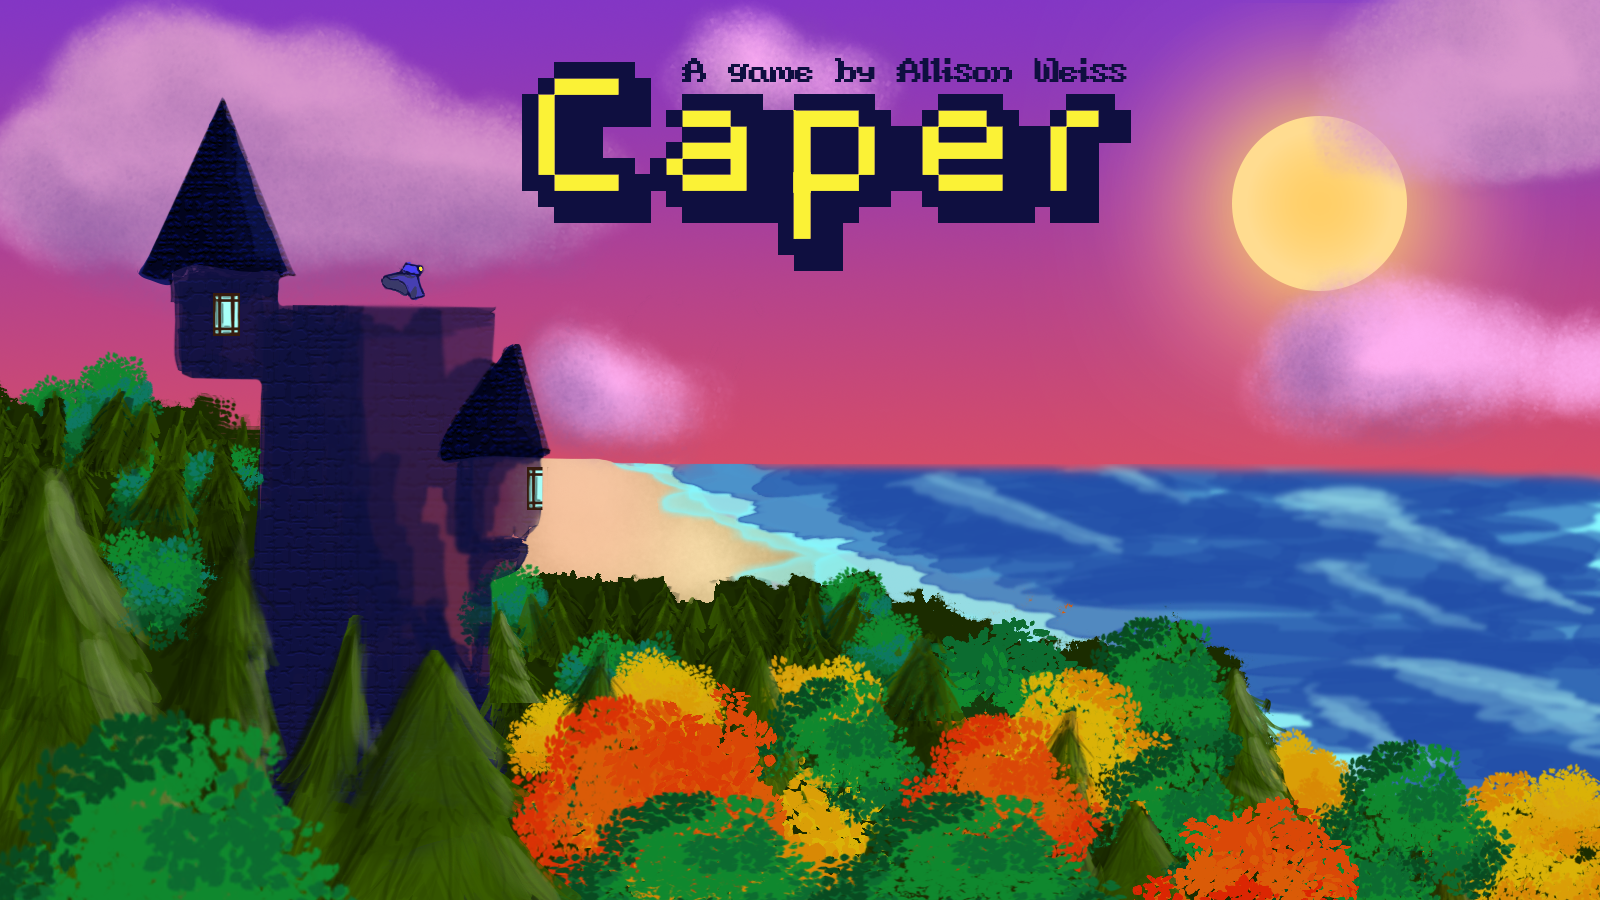 Caper: Level One